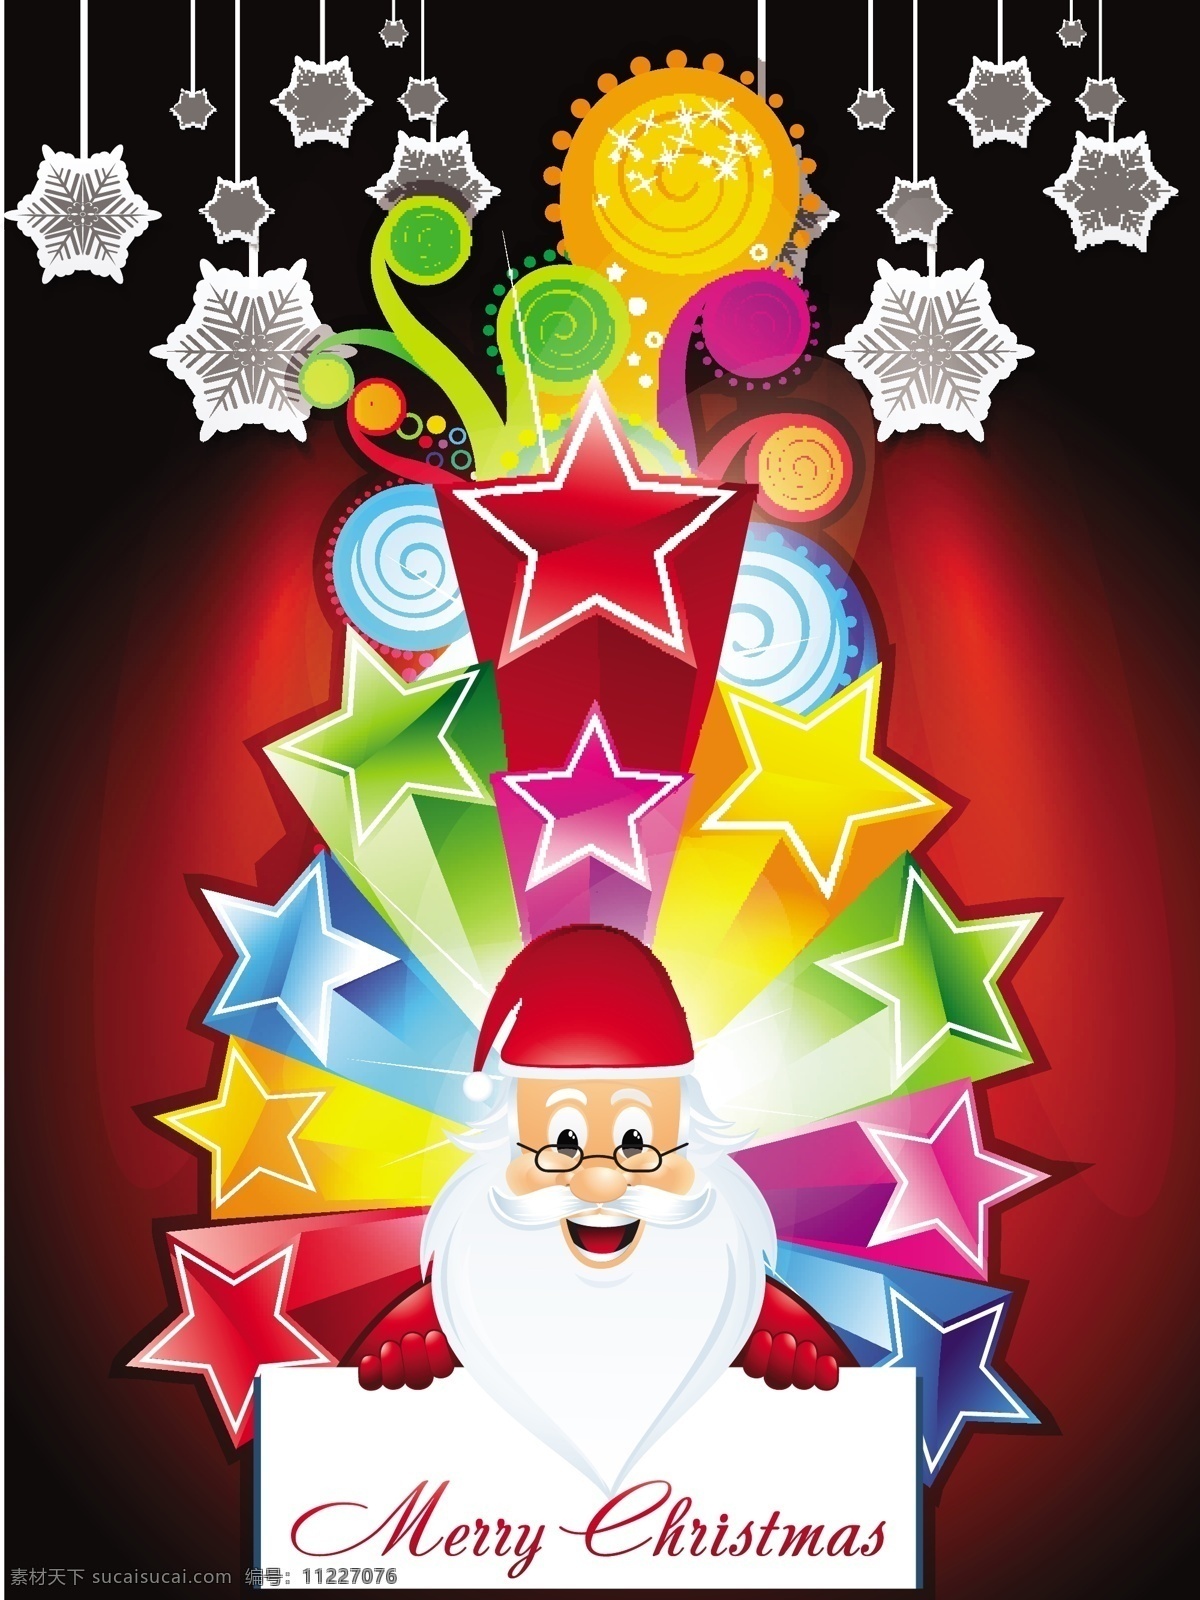 圣诞节 海报 背景 圣诞 圣诞背景 圣诞老人 丝带 五角星 新年背景 雪花 白胡子老人 彩色五角星 海报背景图